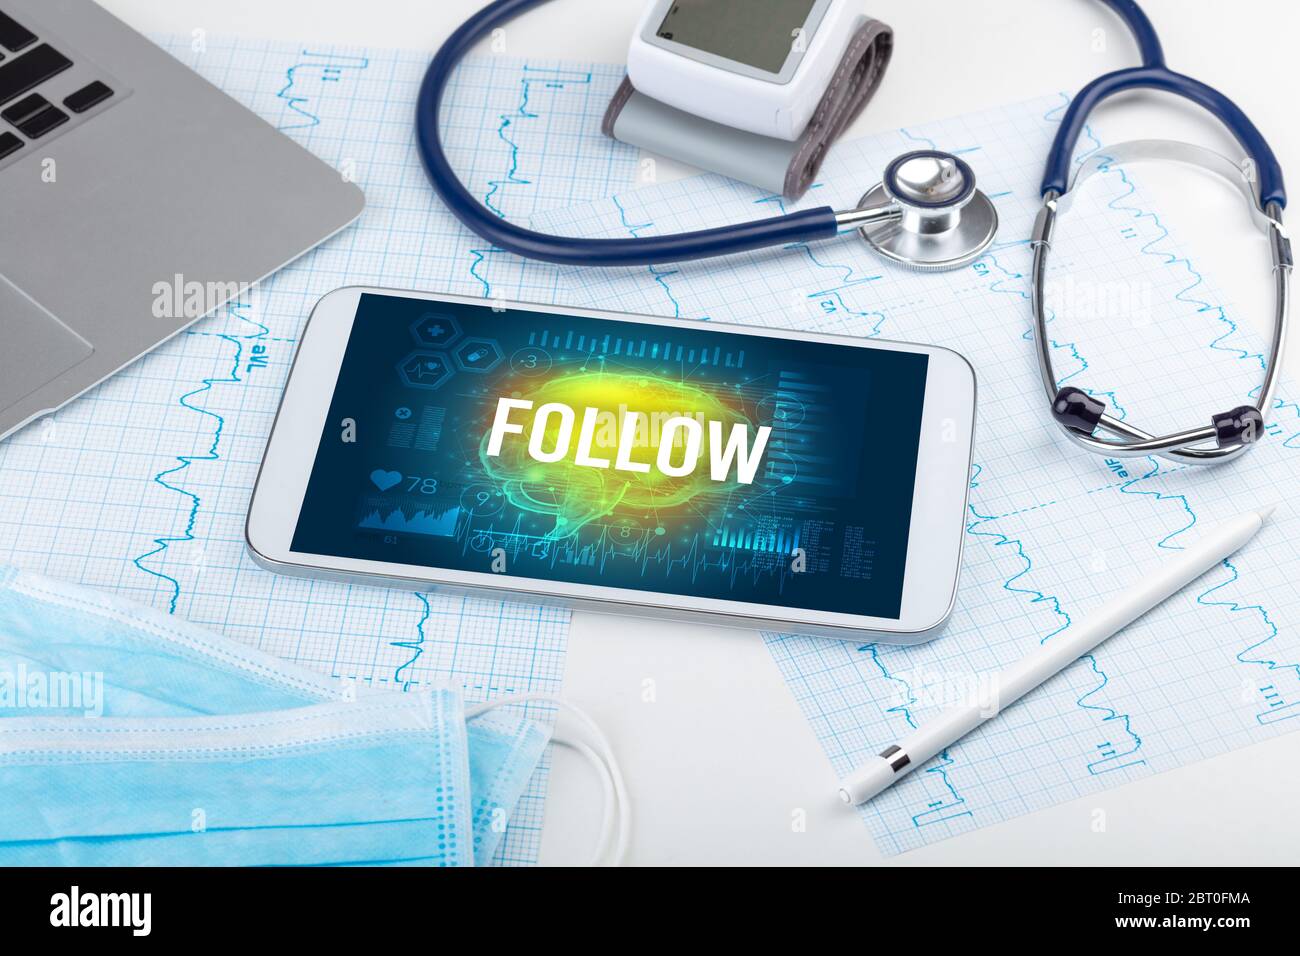 Tablette pc et outils médicaux avec inscription « FOLLOW », concept de distanciation sociale Banque D'Images